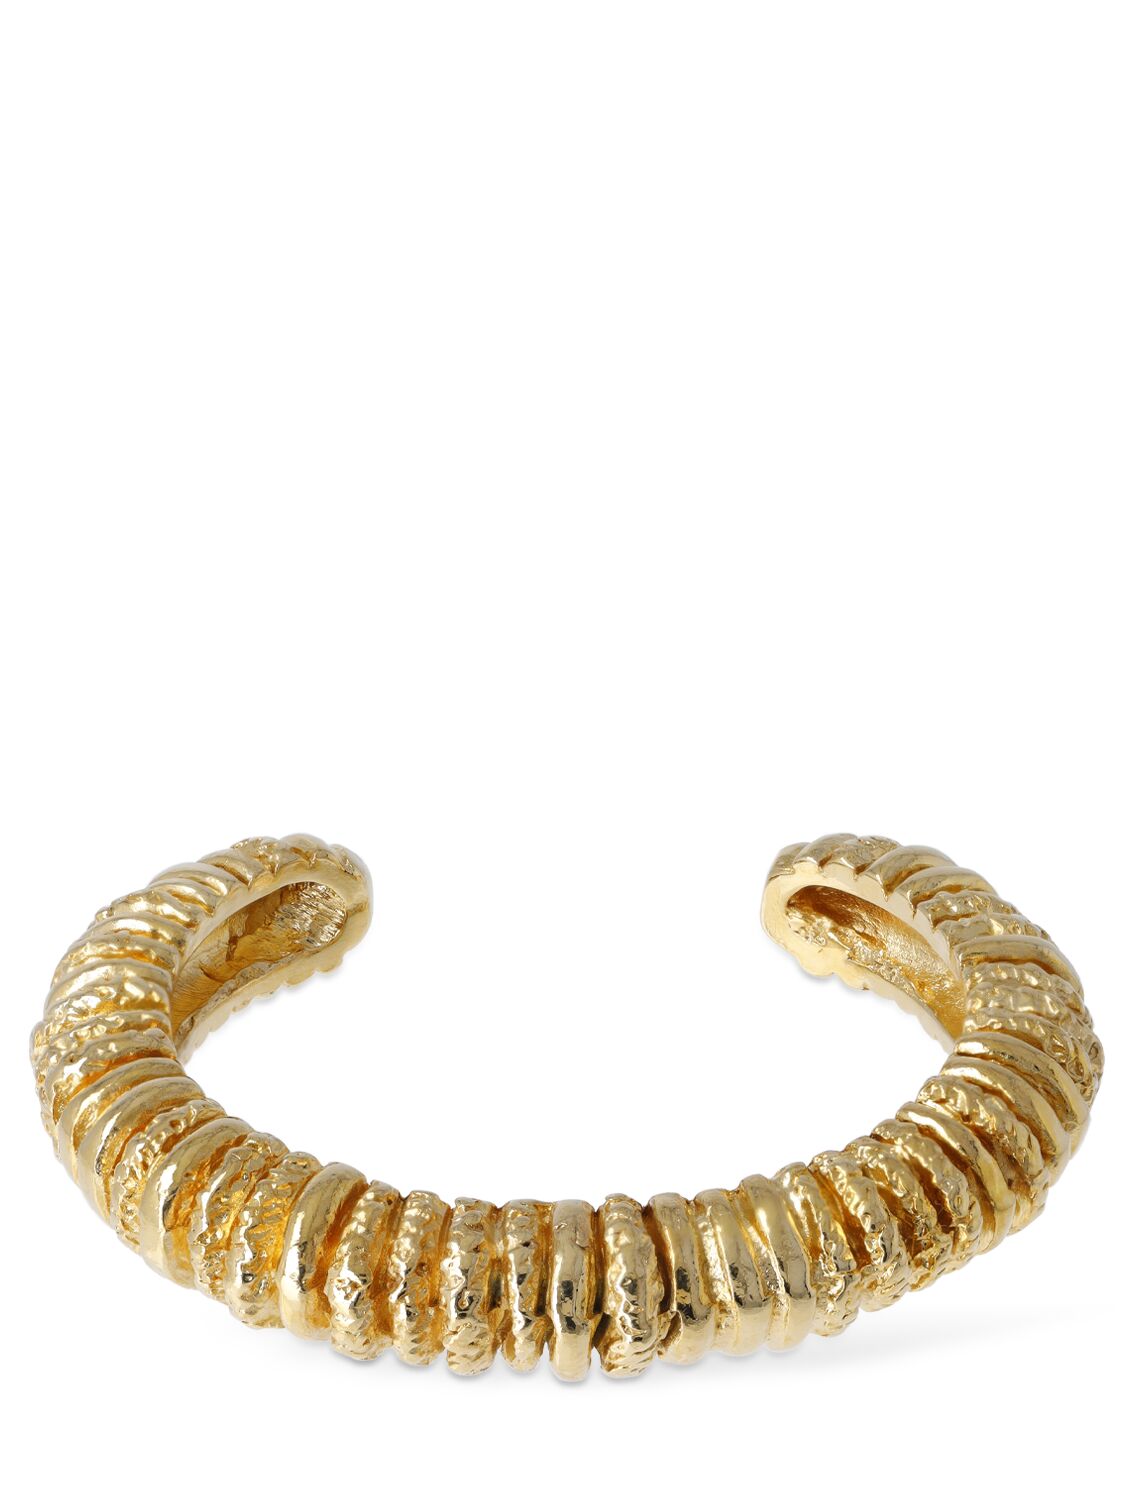 Paola Sighinolfi Capital Cuff Bracelet In Gold